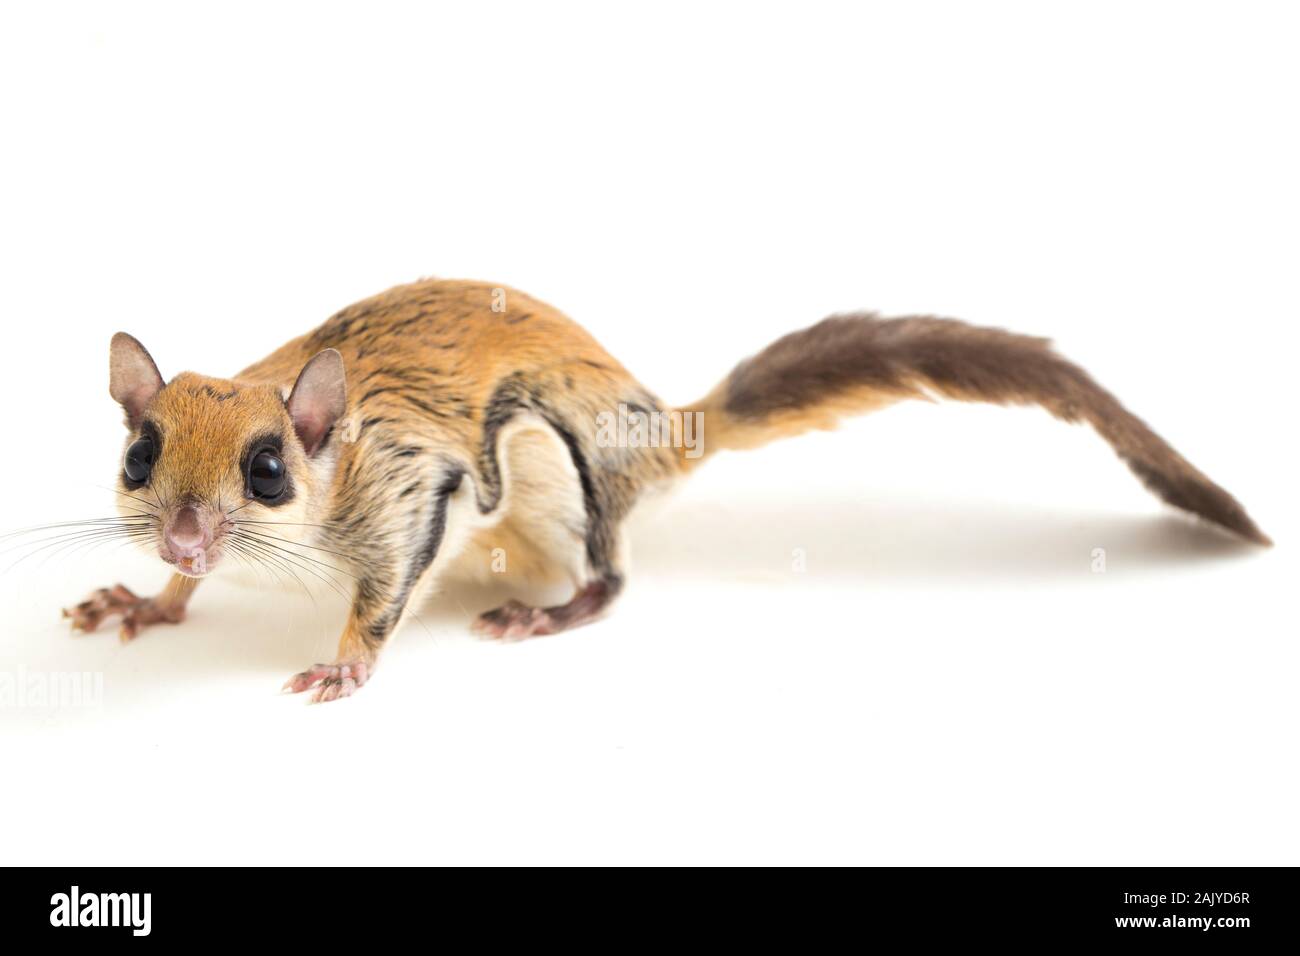 Die Javanische flying squirrel (Iomys horsfieldii) ist eine Nagetierart aus der Familie Sciuridae. Auf weissem Hintergrund Stockfoto